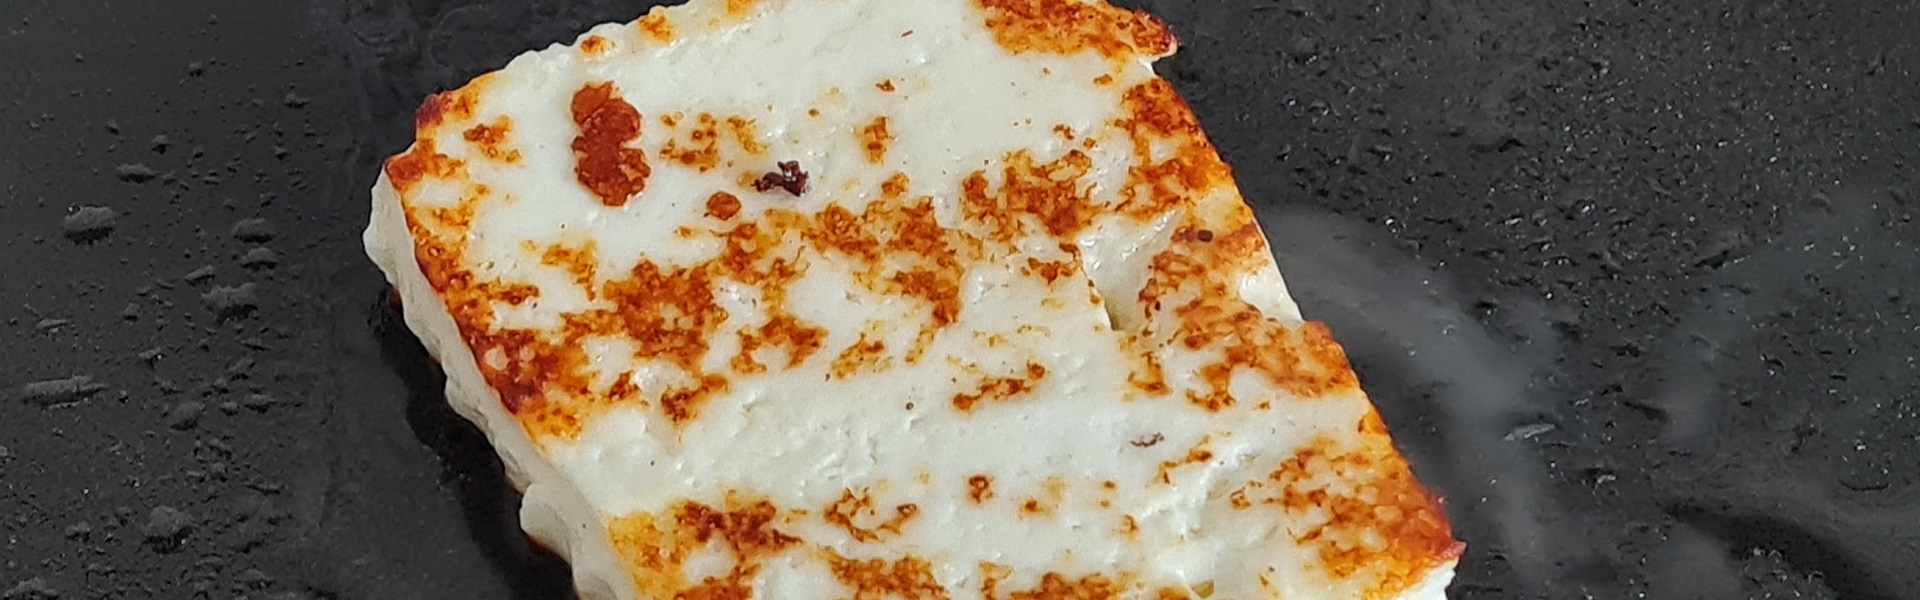 Готовим адыгейский сыр в домашних условиях